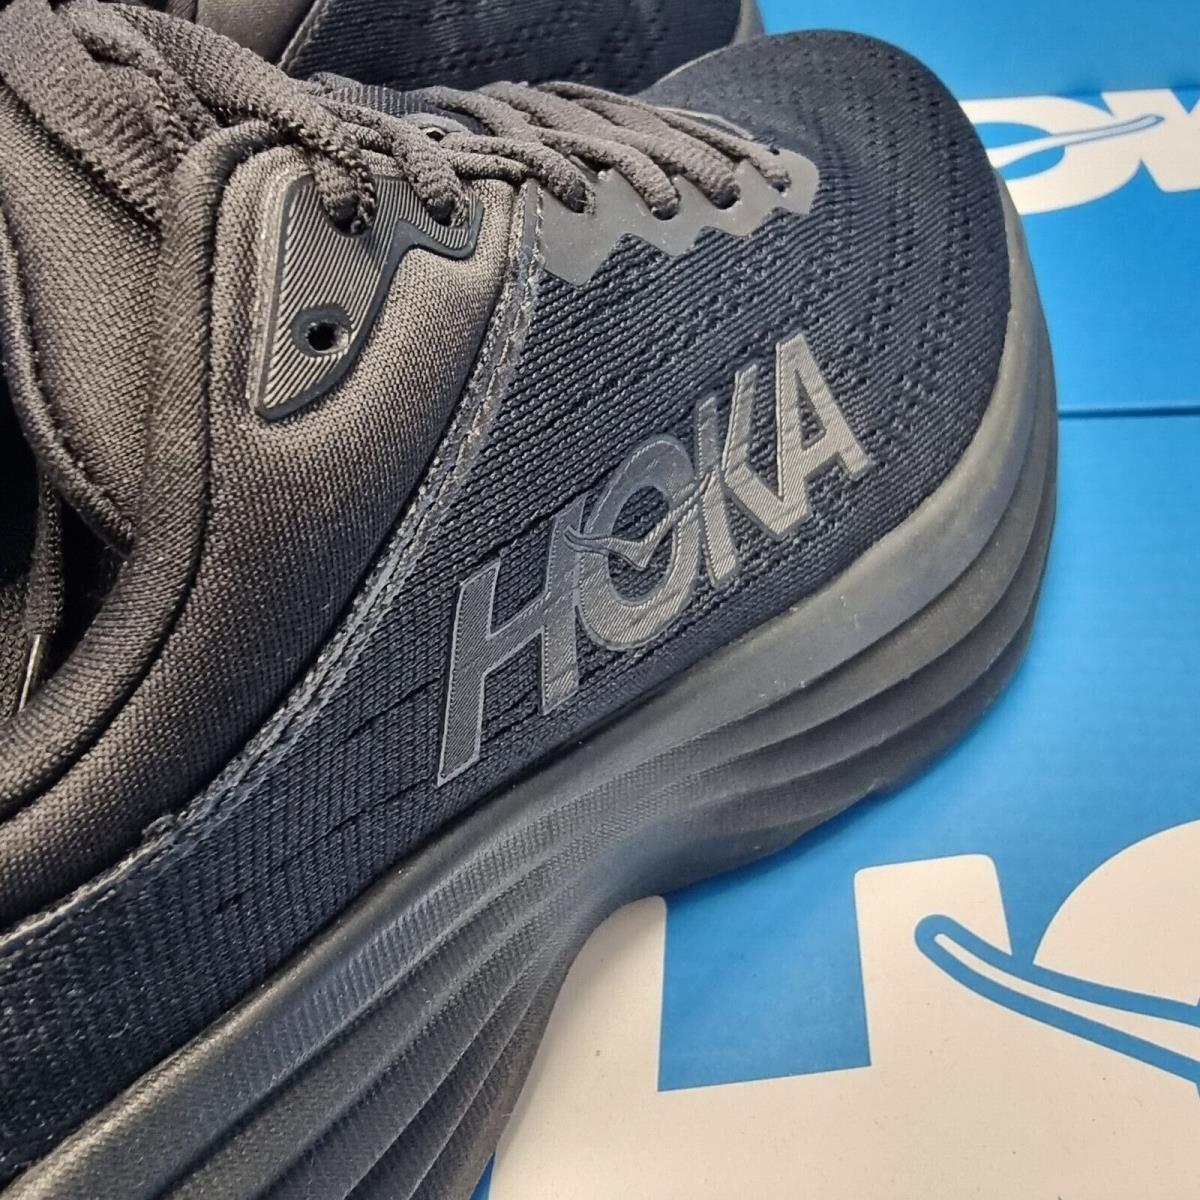 Hoka shoes Bondi - Black 1